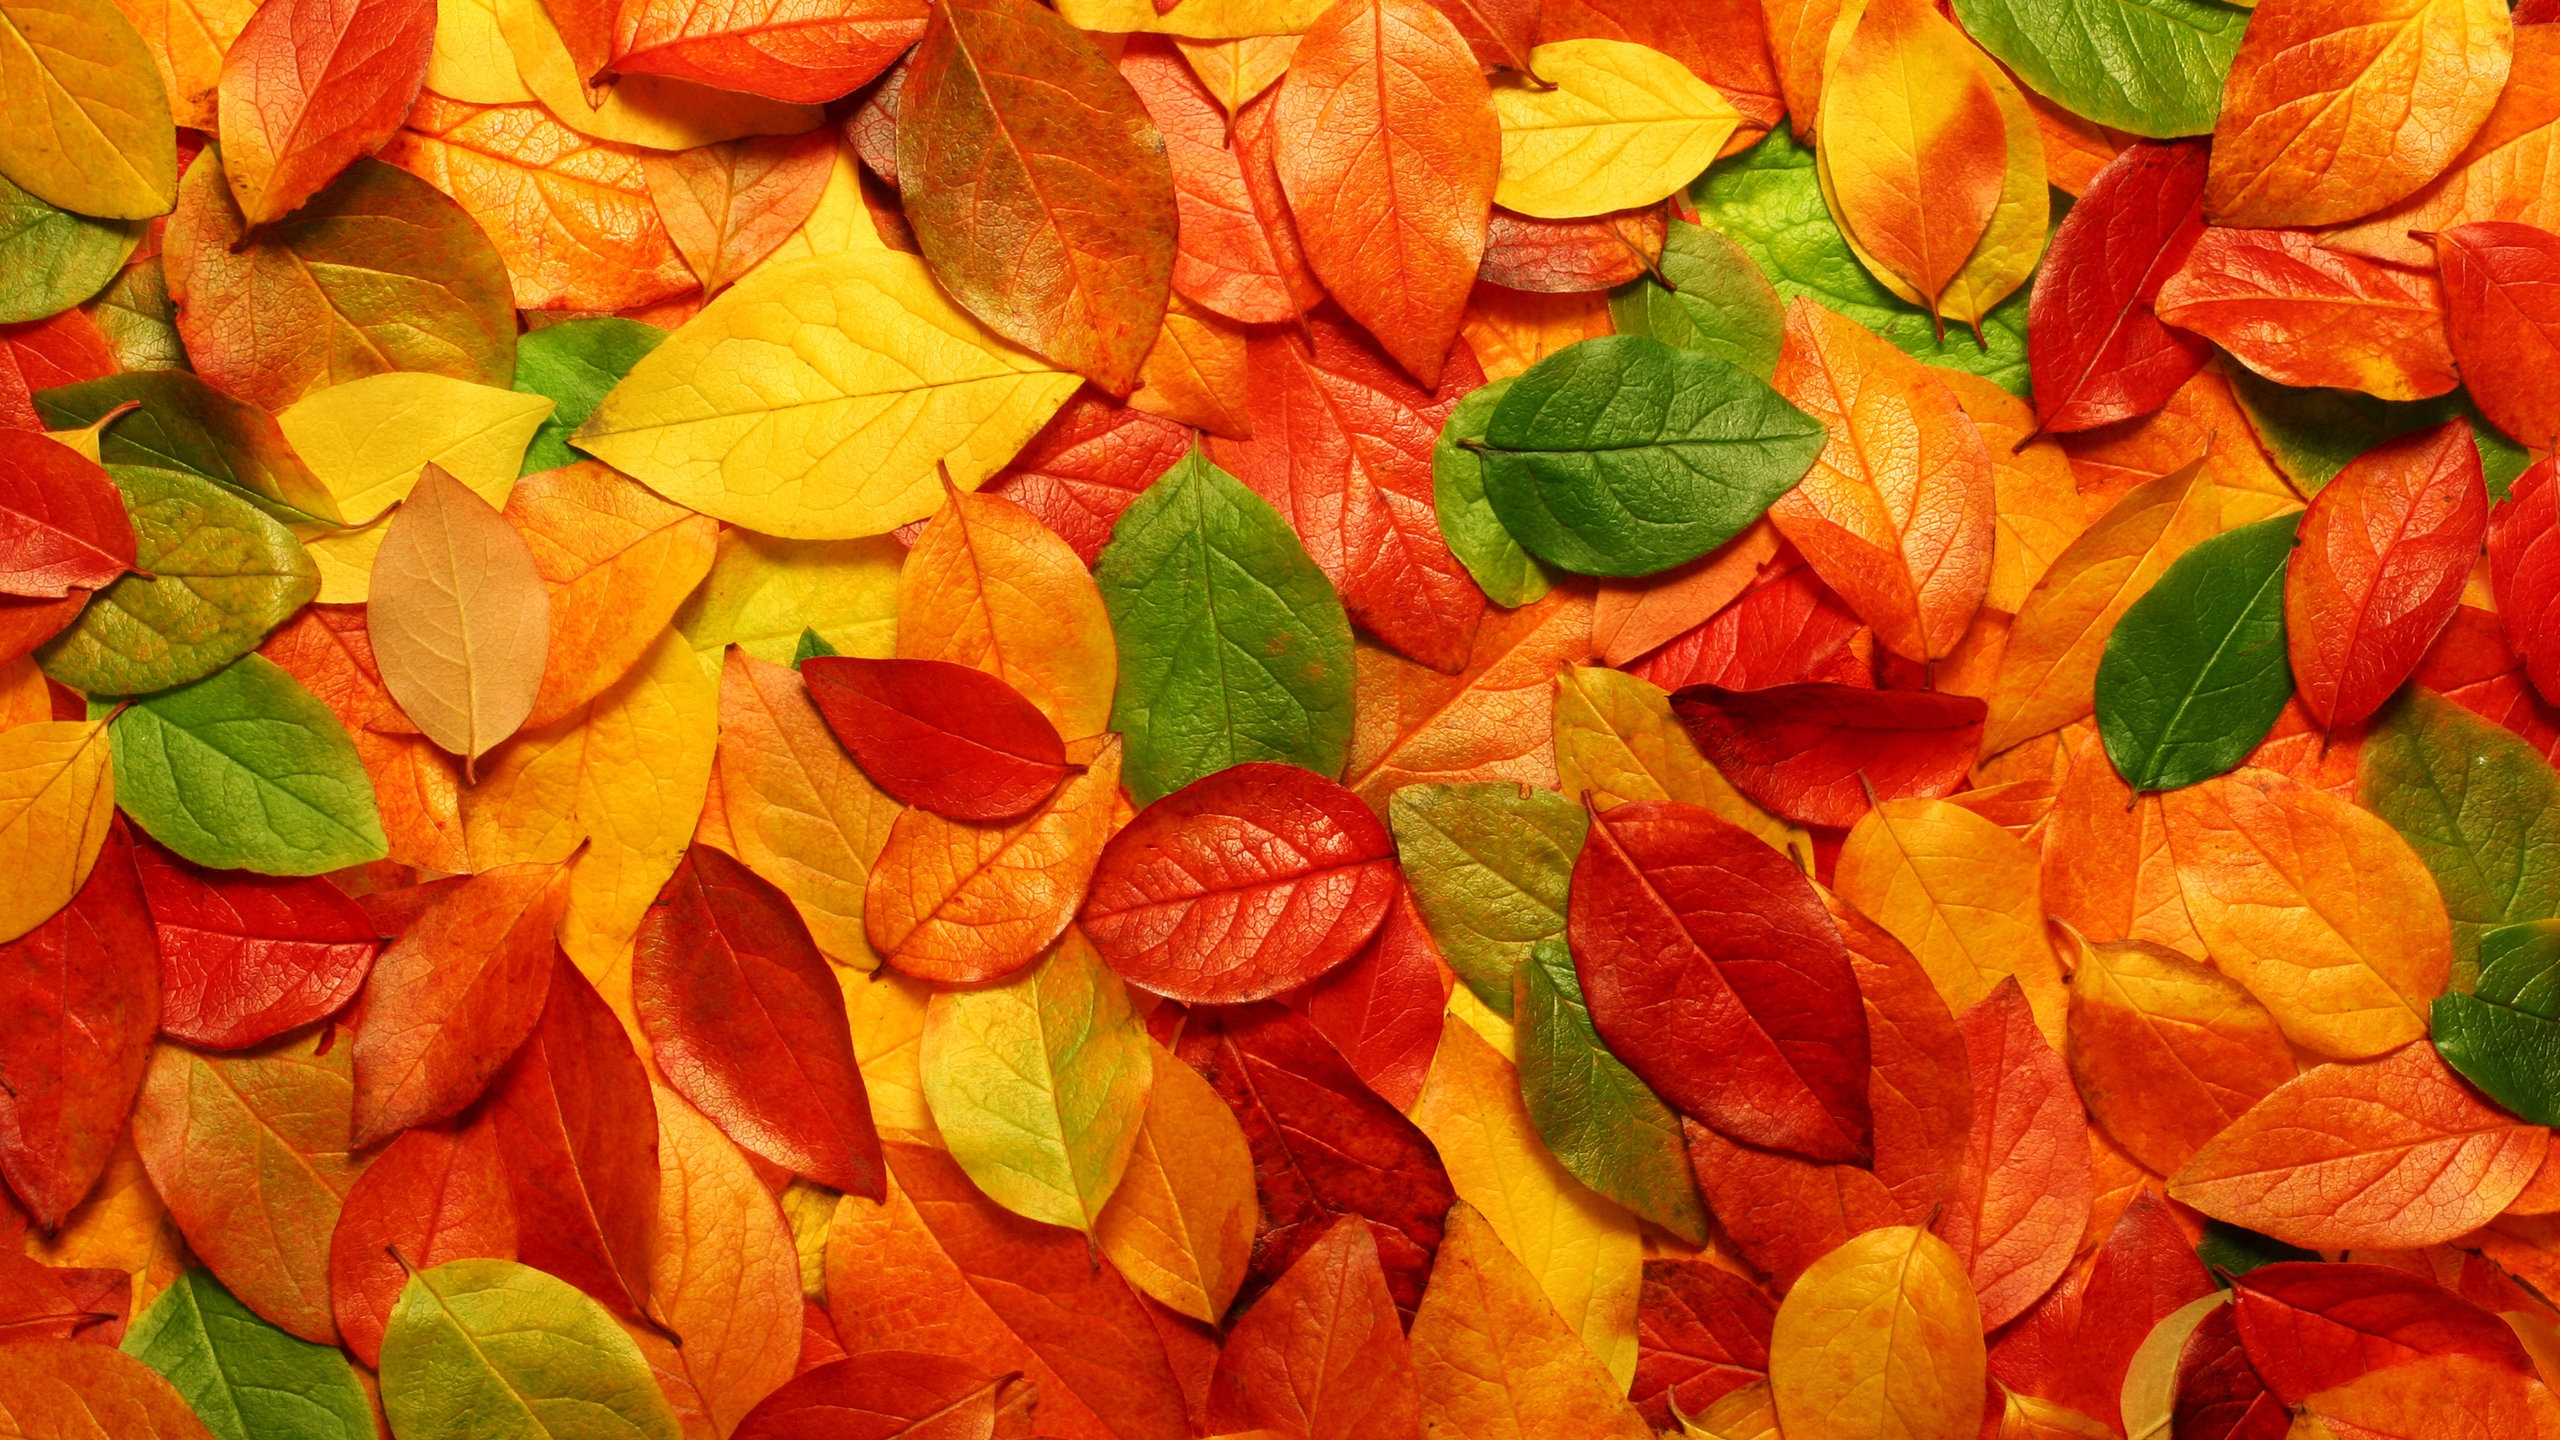 Autumn carpet of leaves for 2560x1440 HDTV resolution